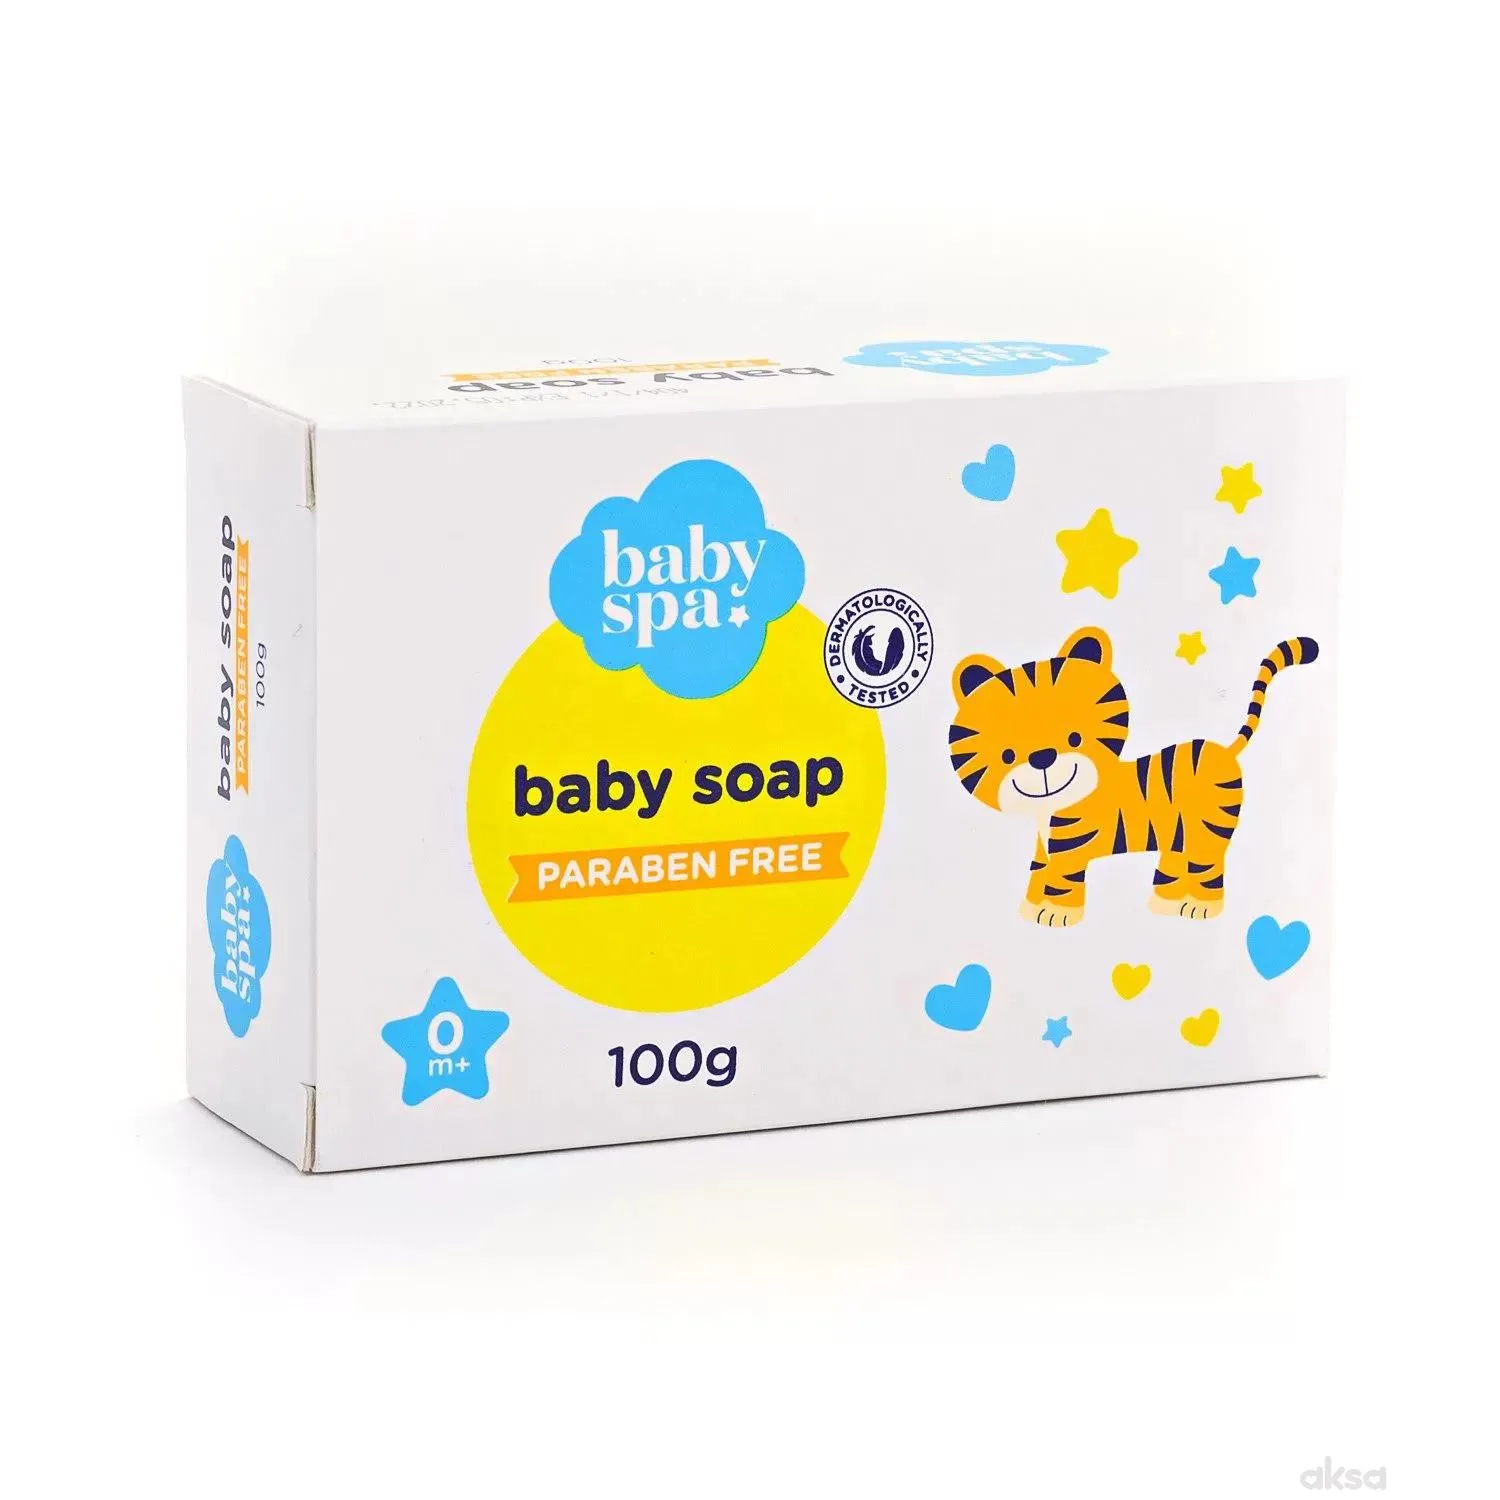 Baby spa sapun za bebe 100g 